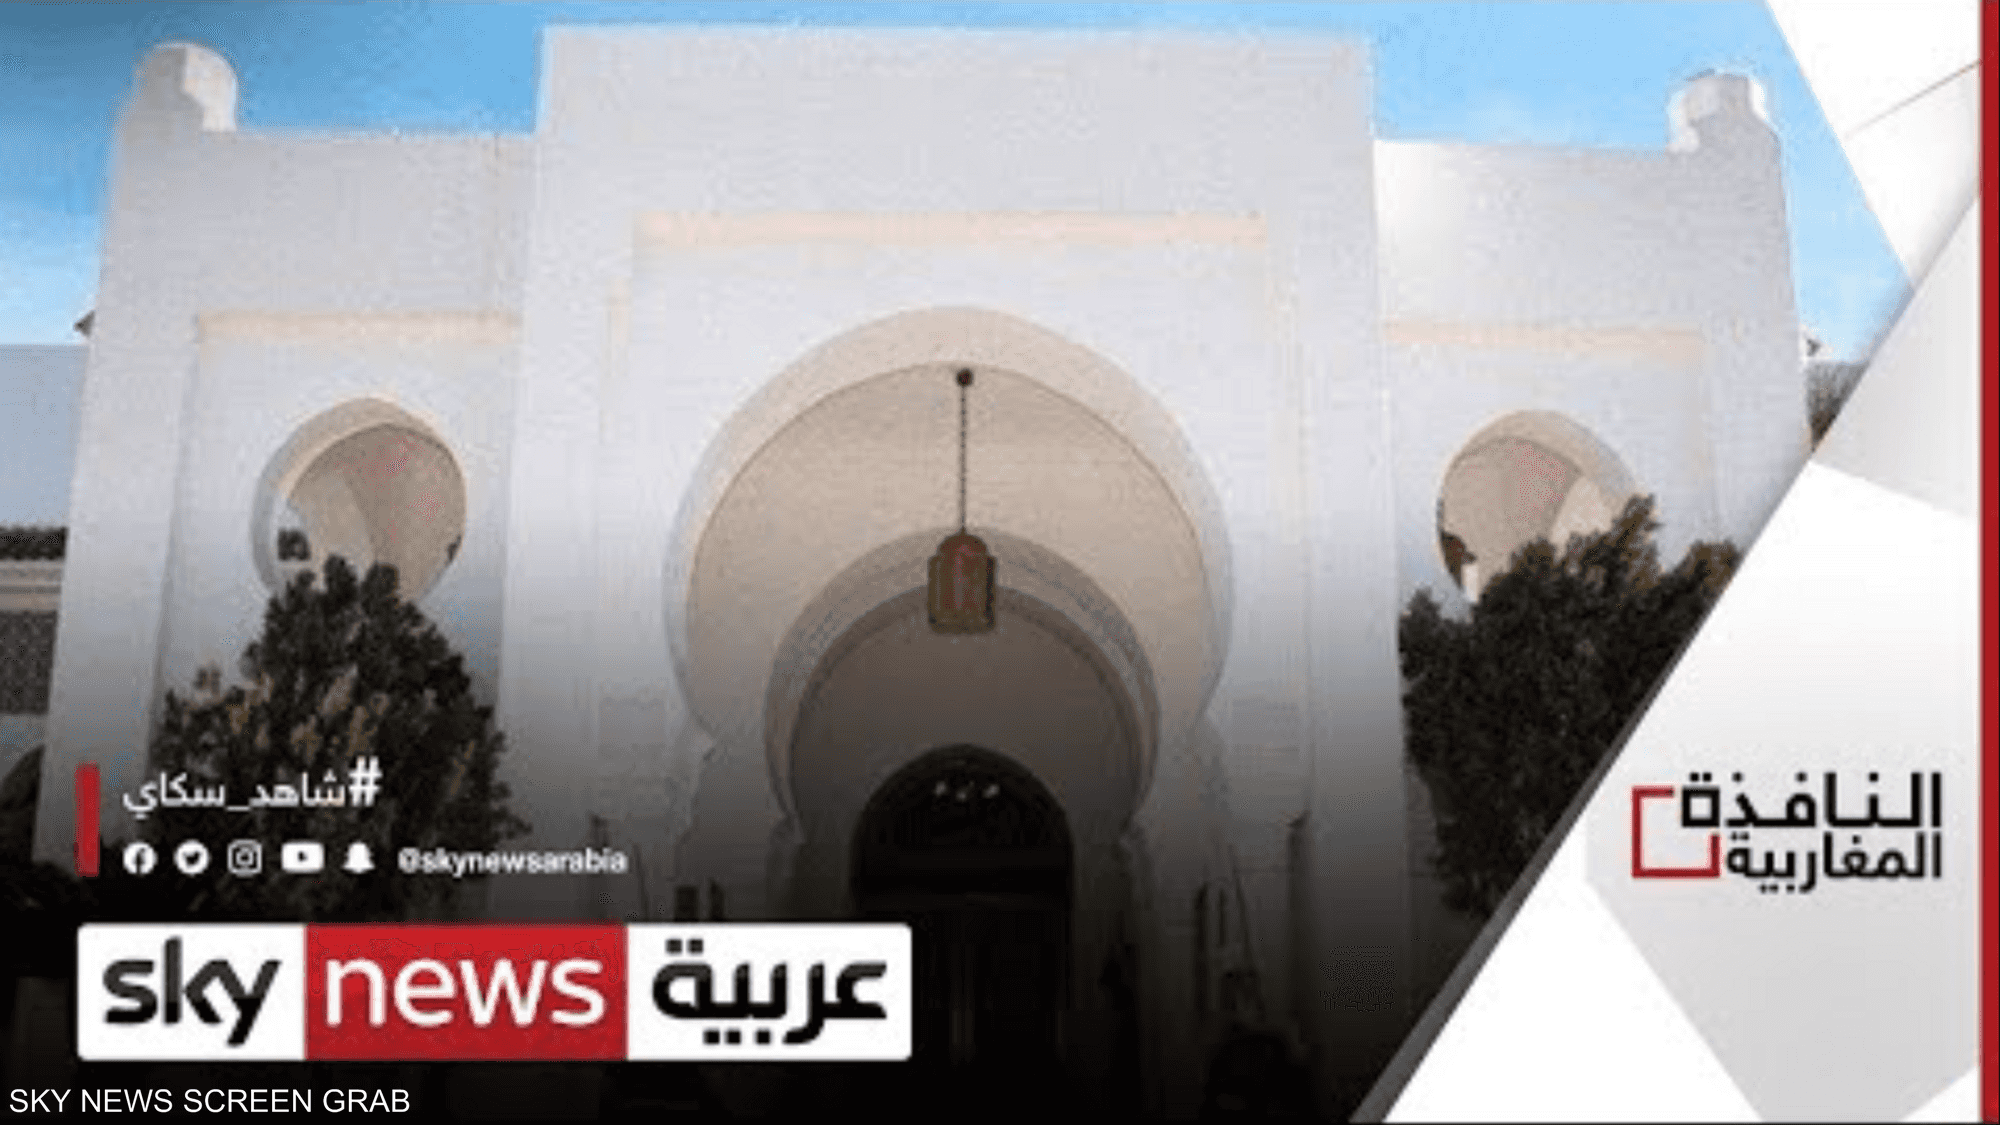 تعديل قانون بالجزائر لمكافحة الفساد والإرهاب